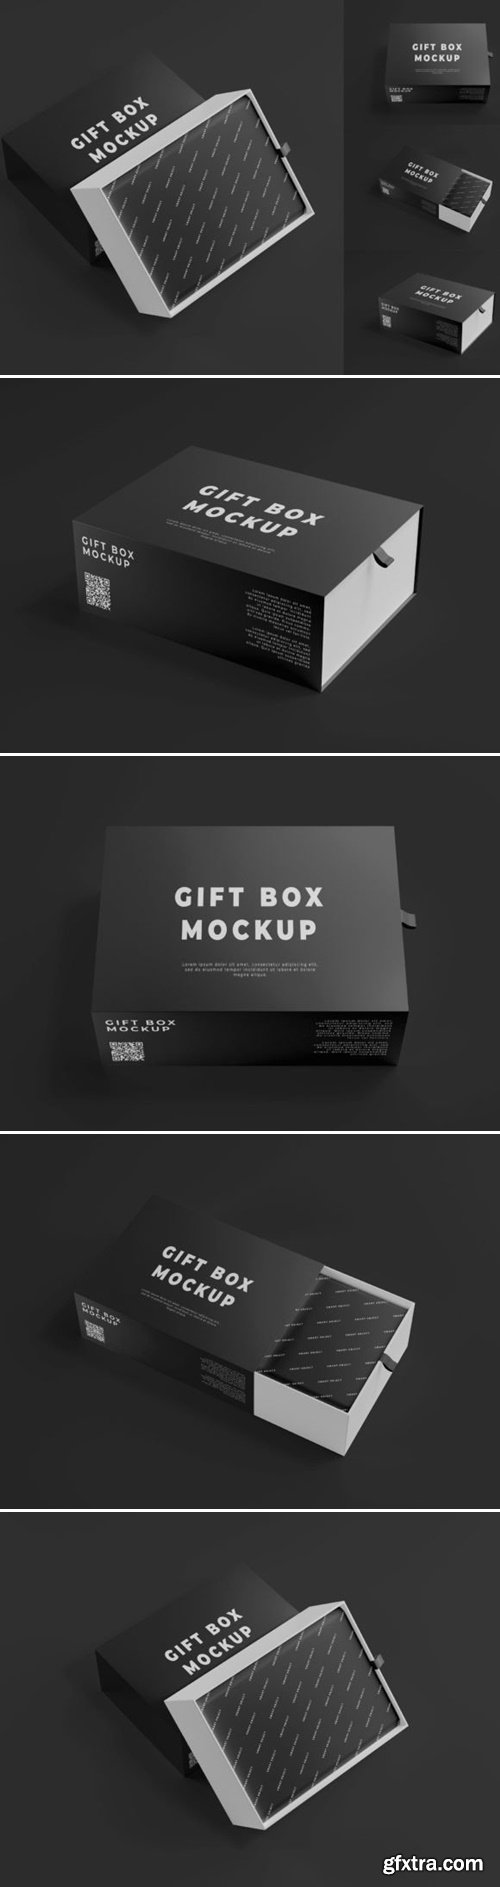 Bundle Gift Box Mockup 54490673